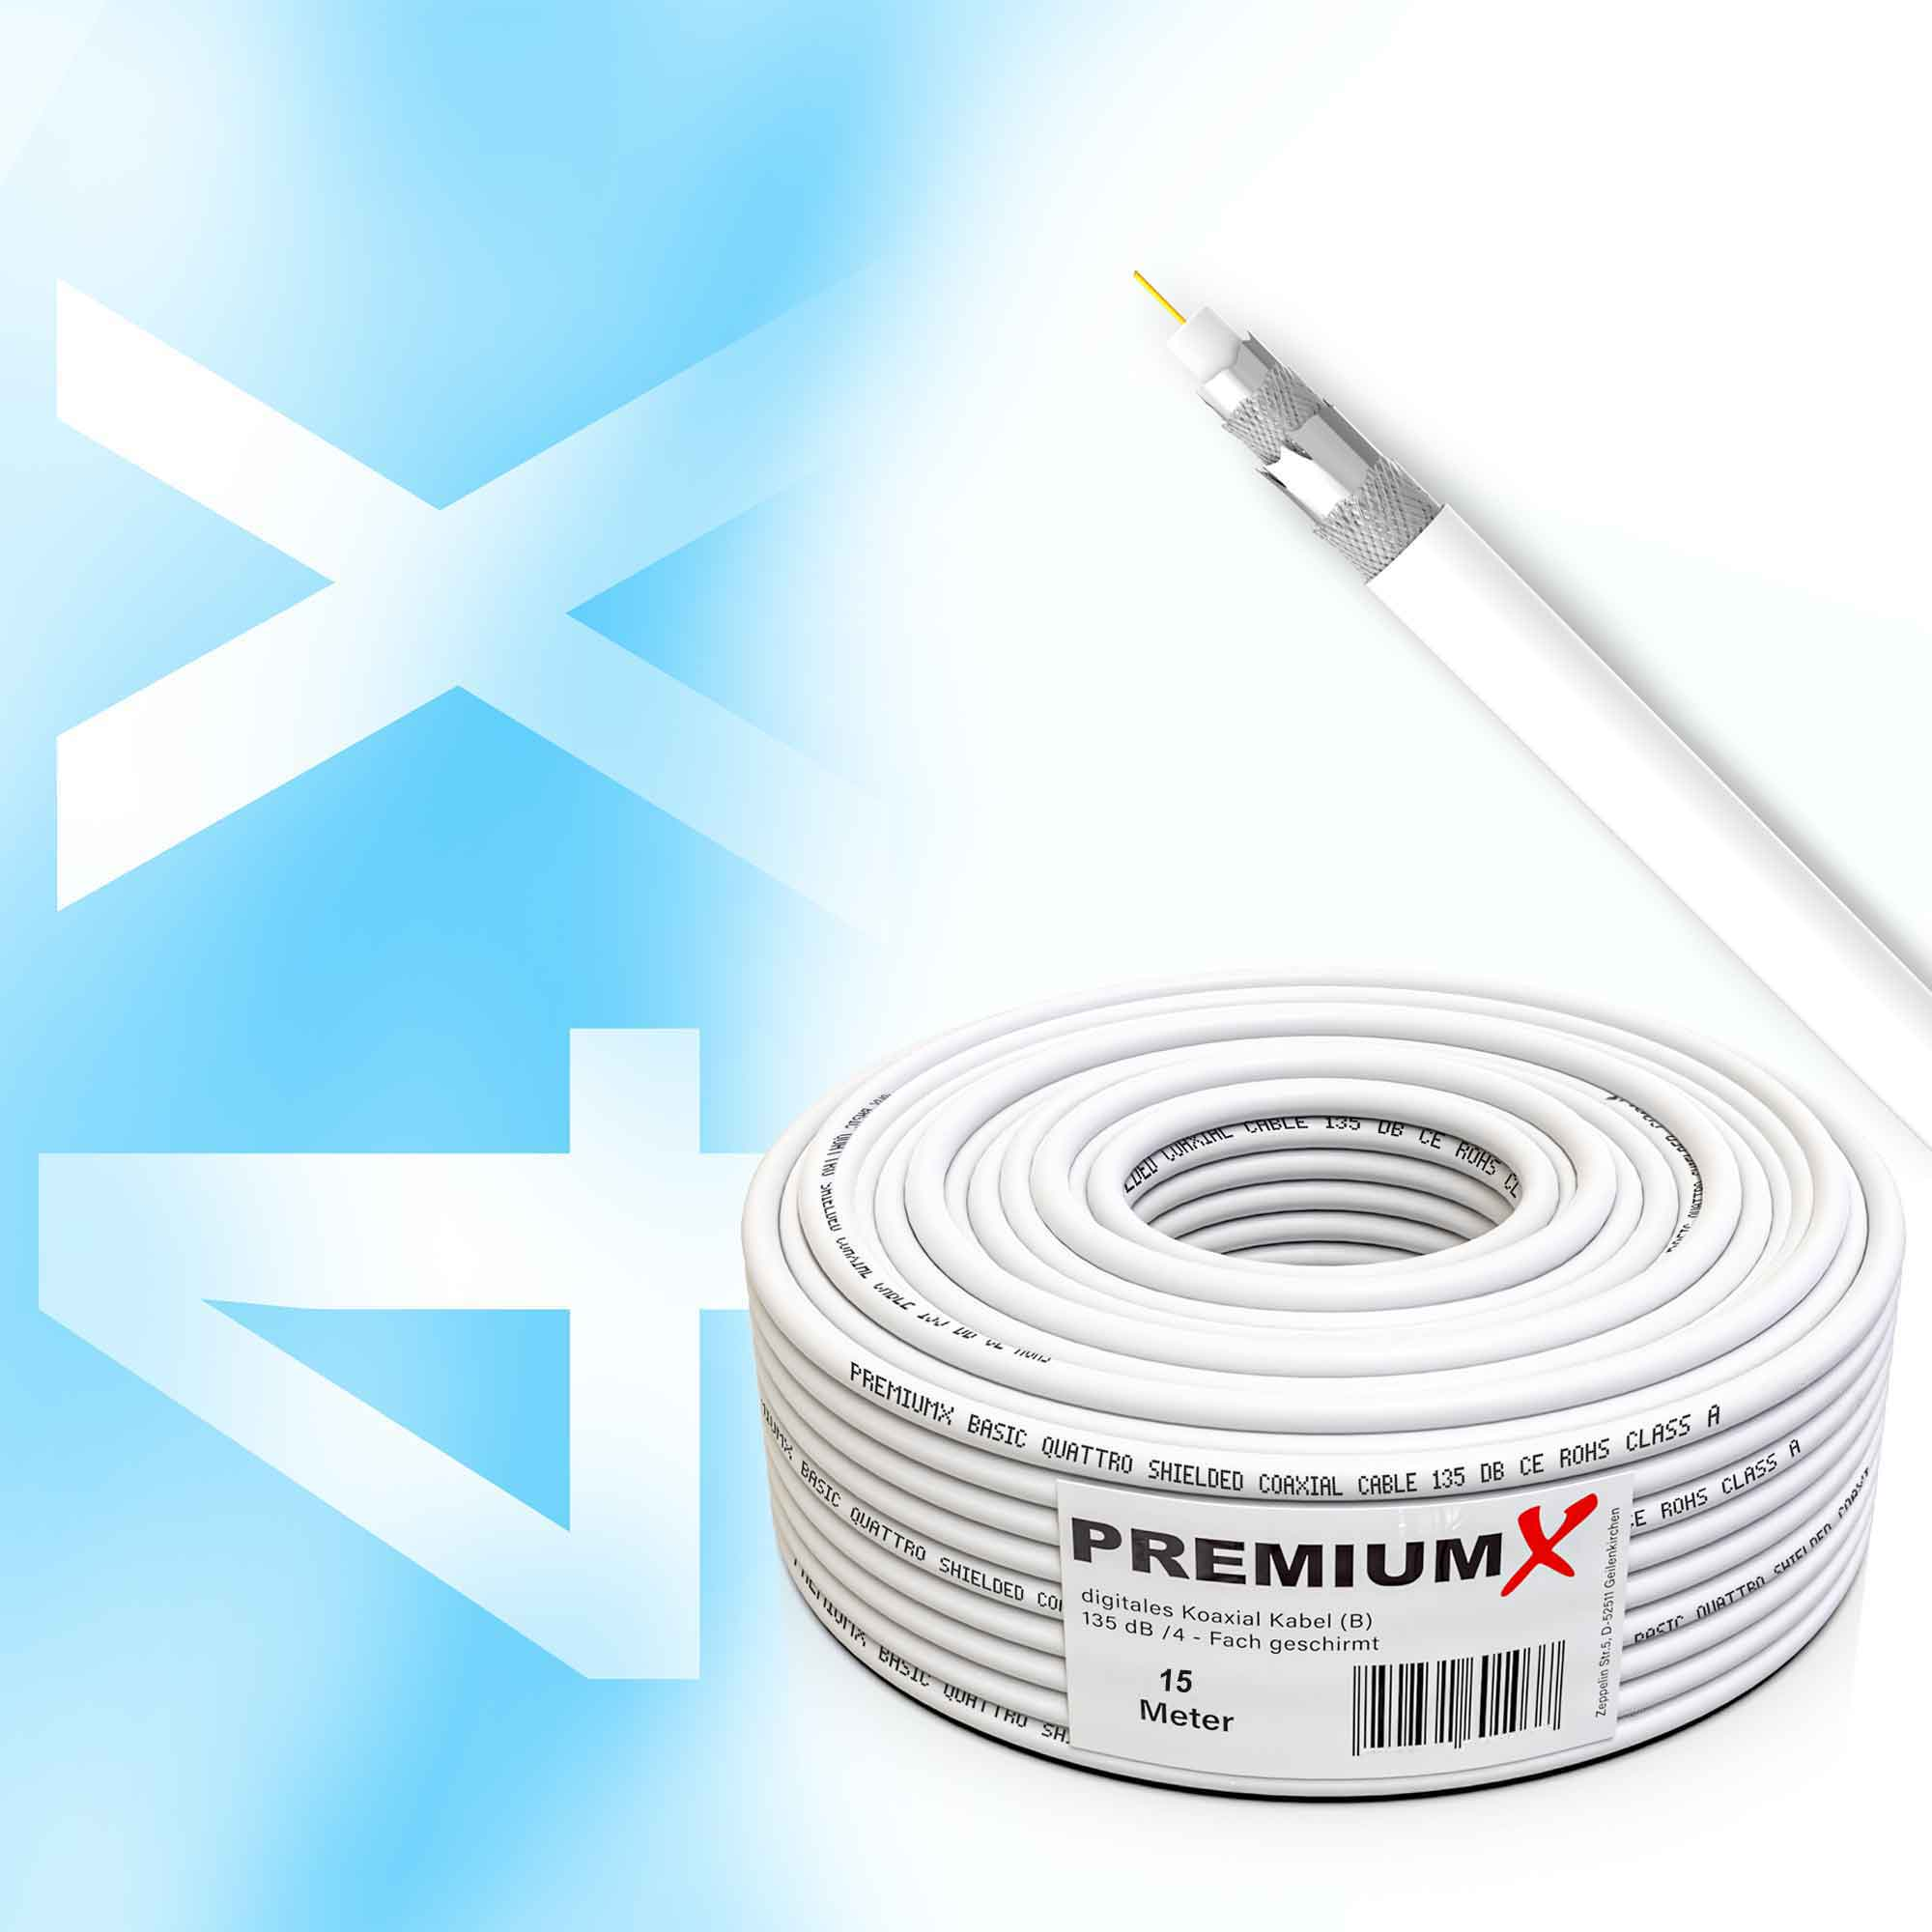 PREMIUMX 15m BASIC Koaxialkabel 4-fach Antennenkabel CCS Kabel Antennenkabel 135dB SAT